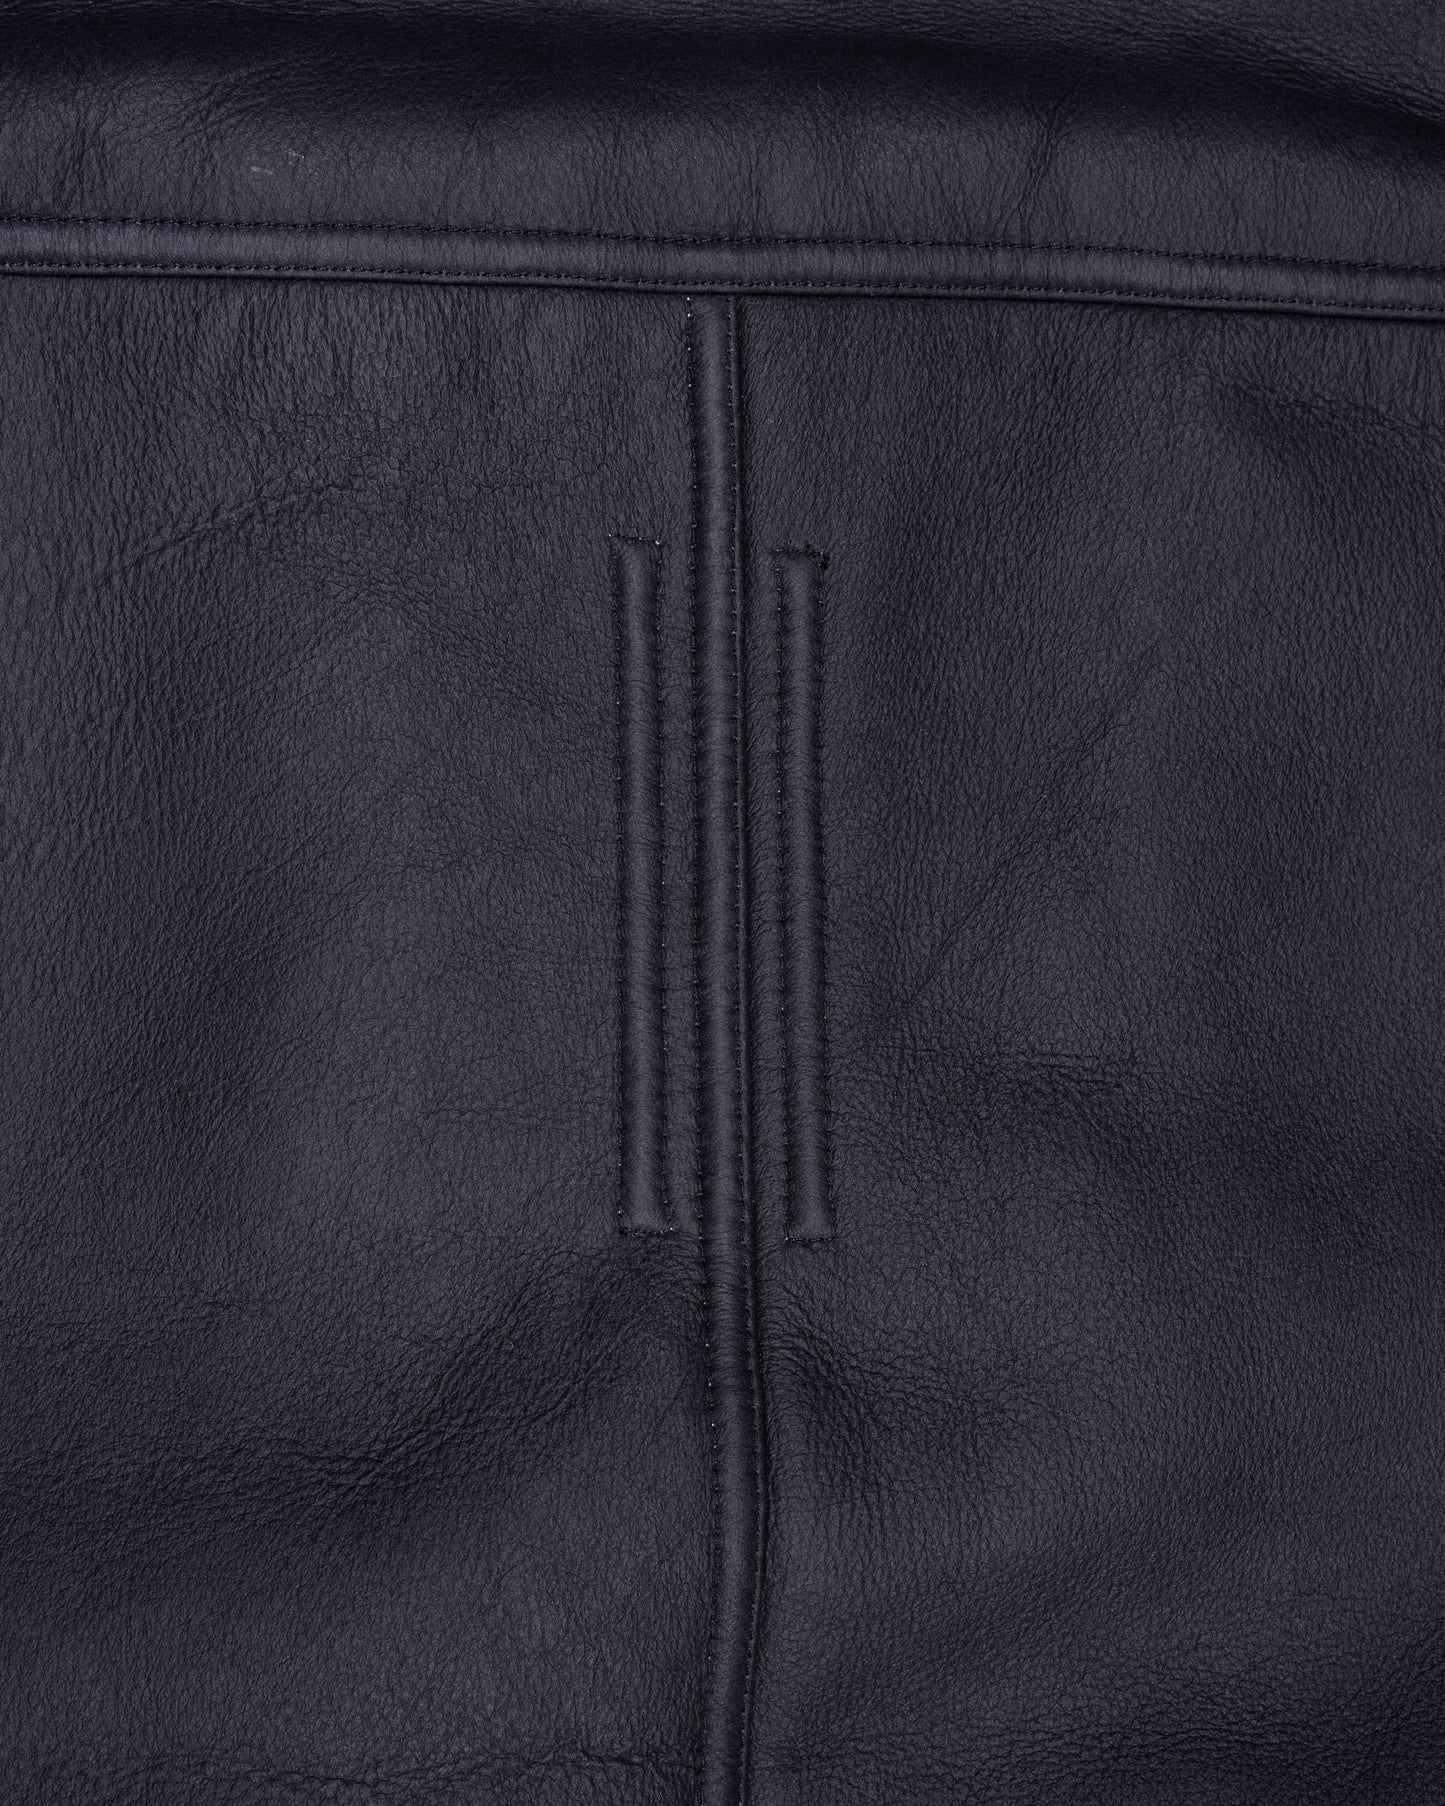 Rick Owens Sisyphus FW18 leather shearling jacket